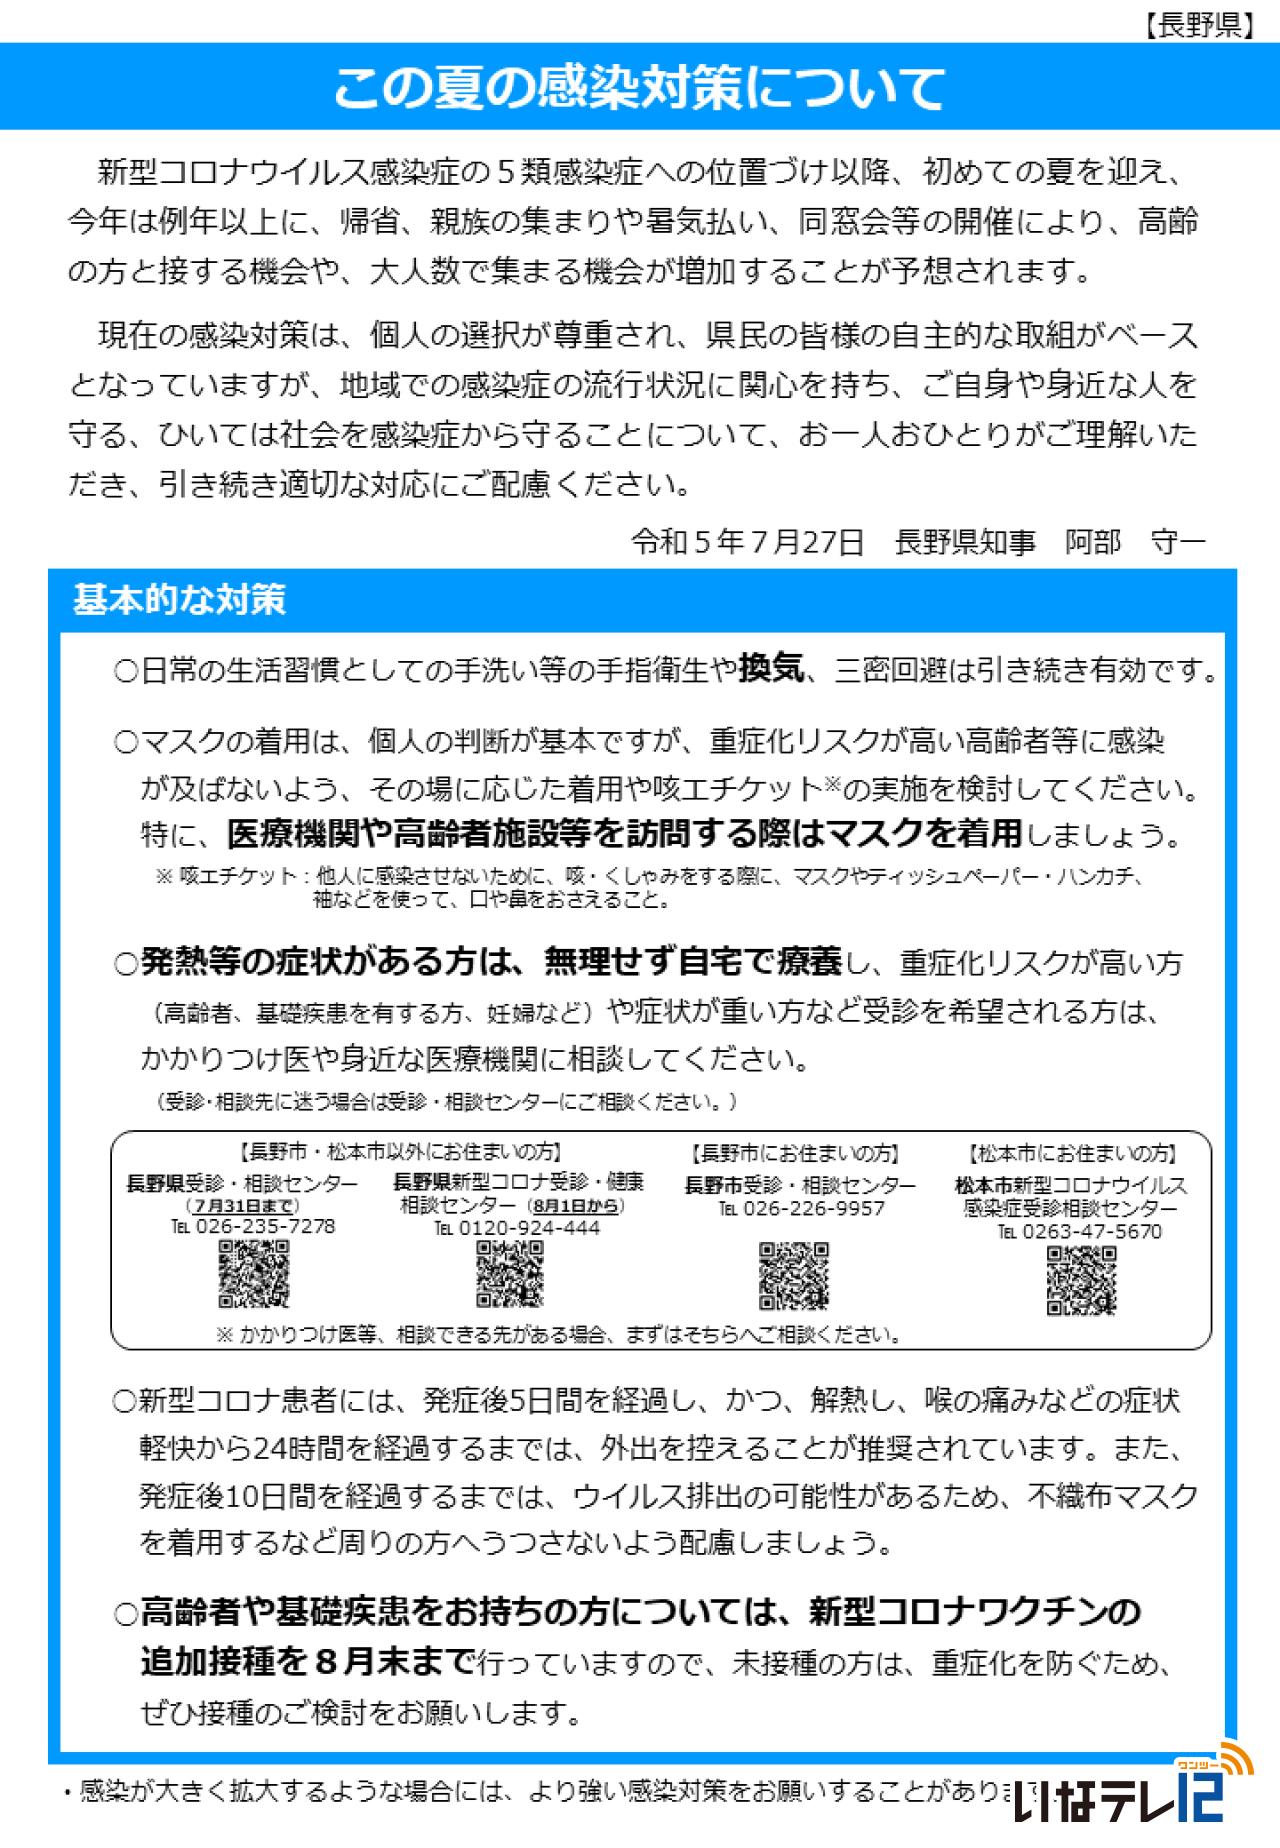 新型コロナウイルスに関する長野県からの情報